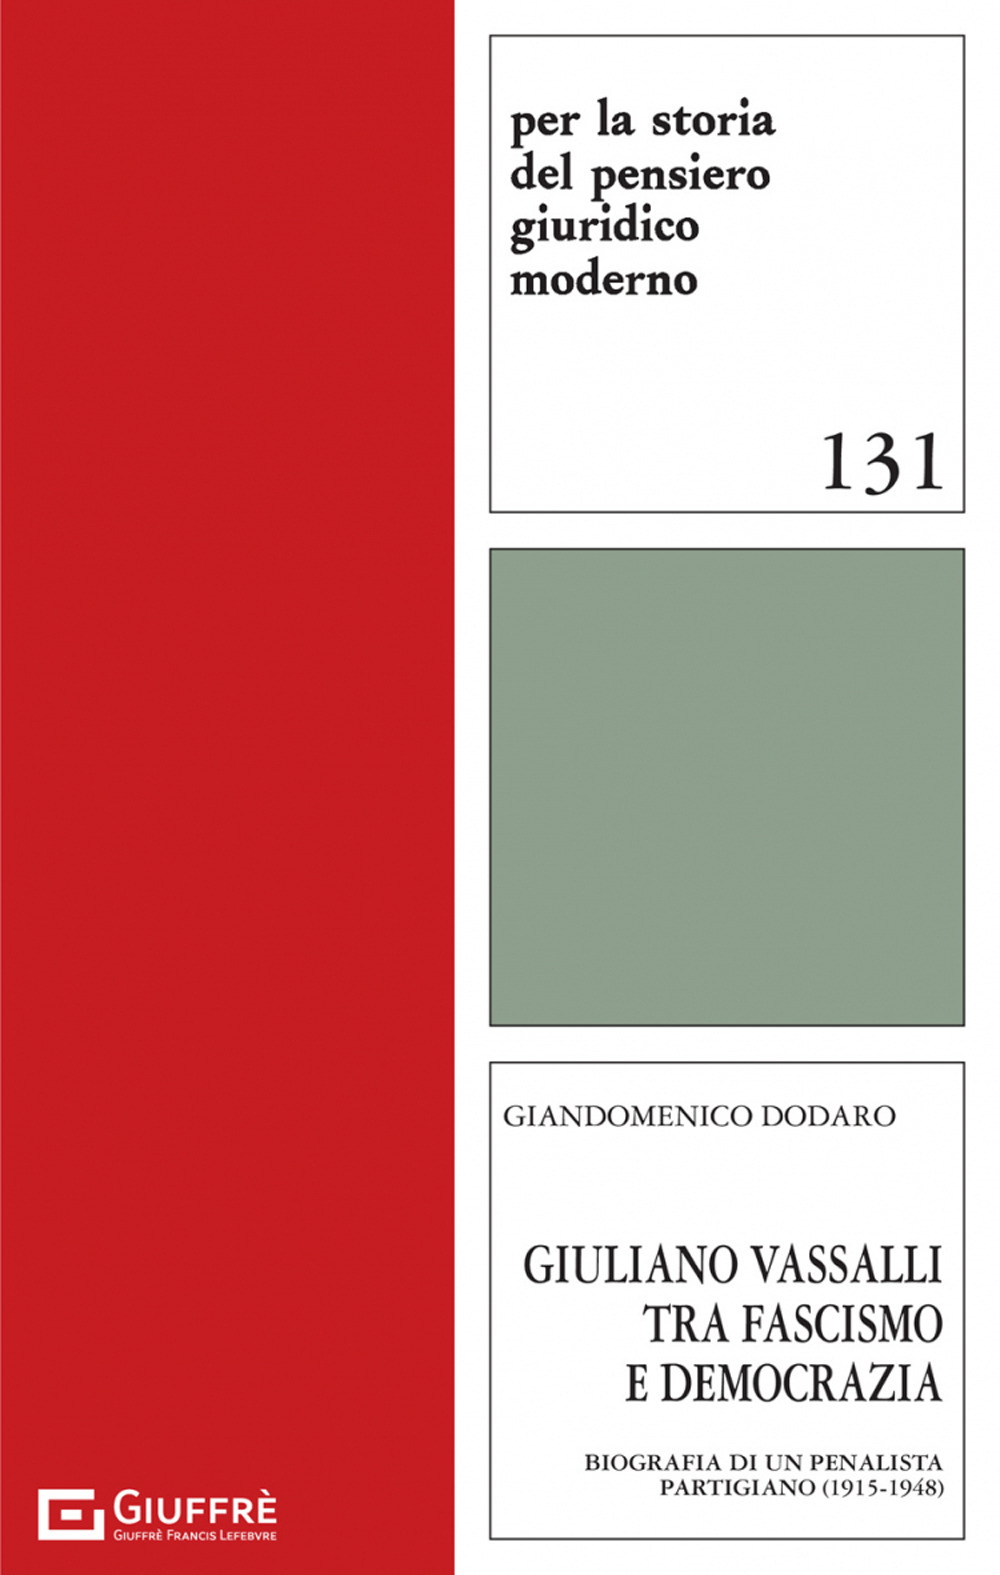 Giuliano Vassalli tra fascismo e democrazia